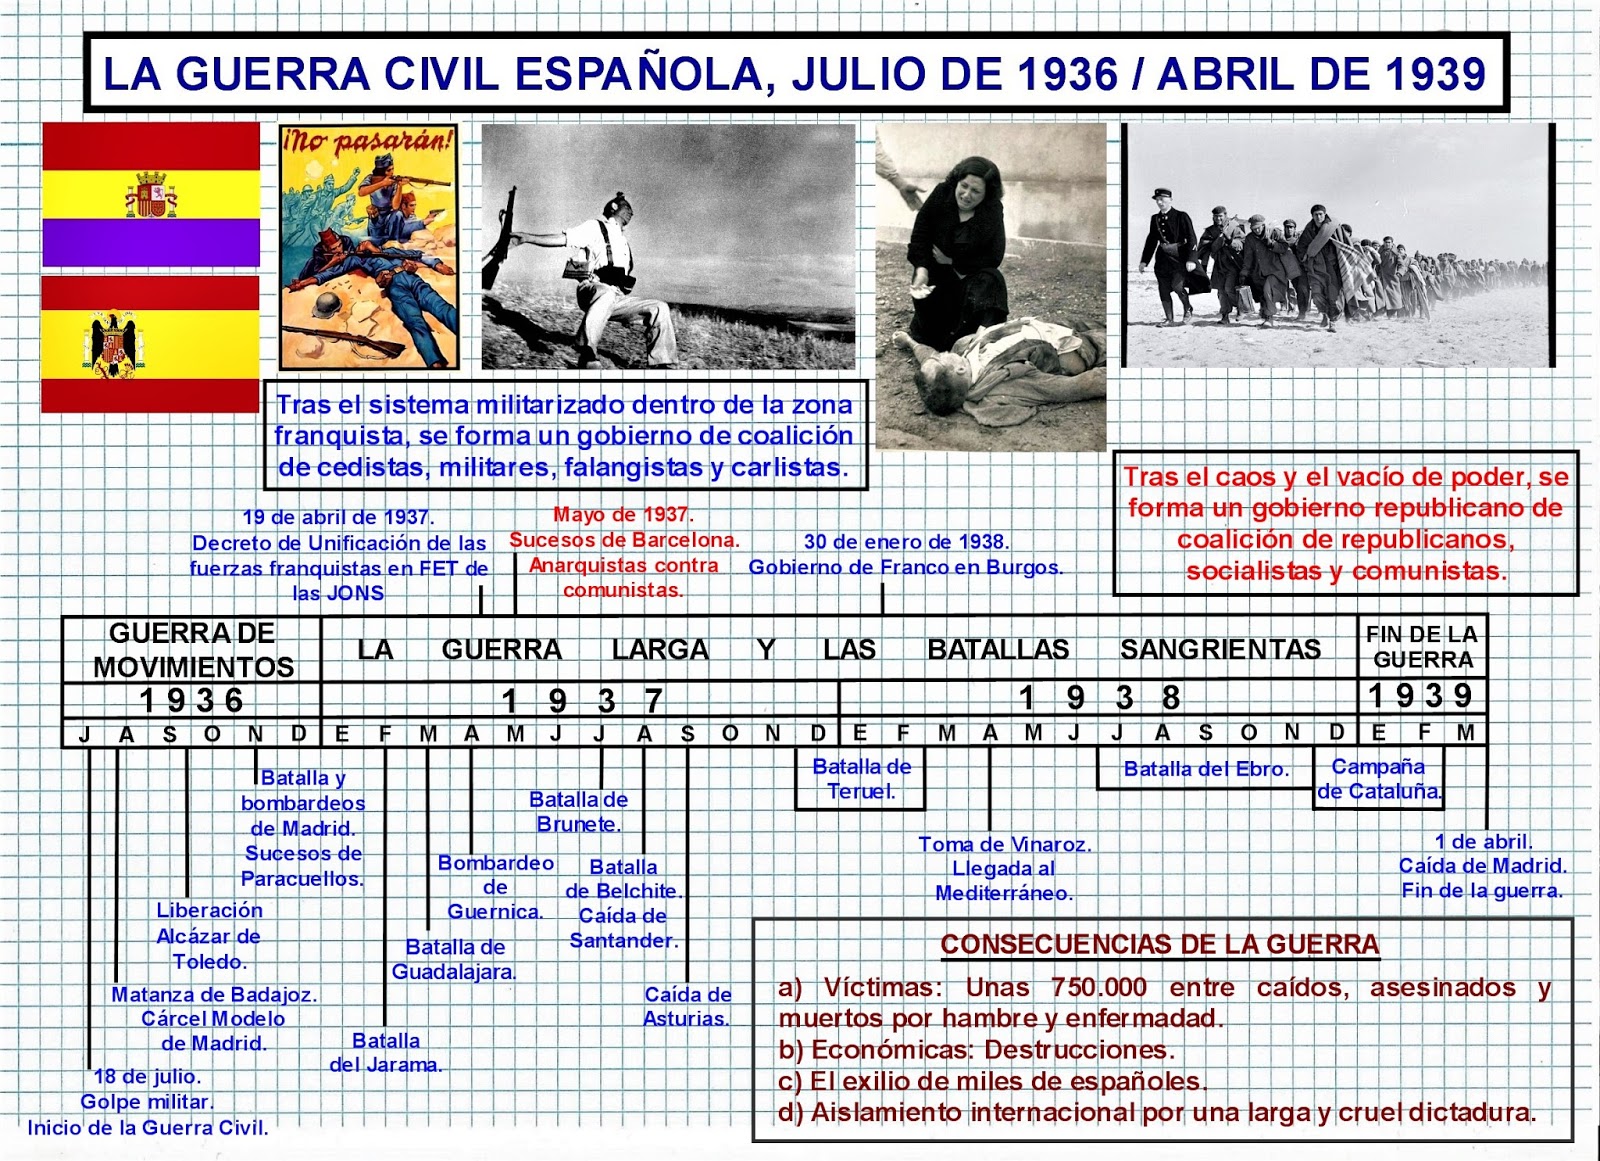 Cinco eventos clave de la Guerra Civil Española